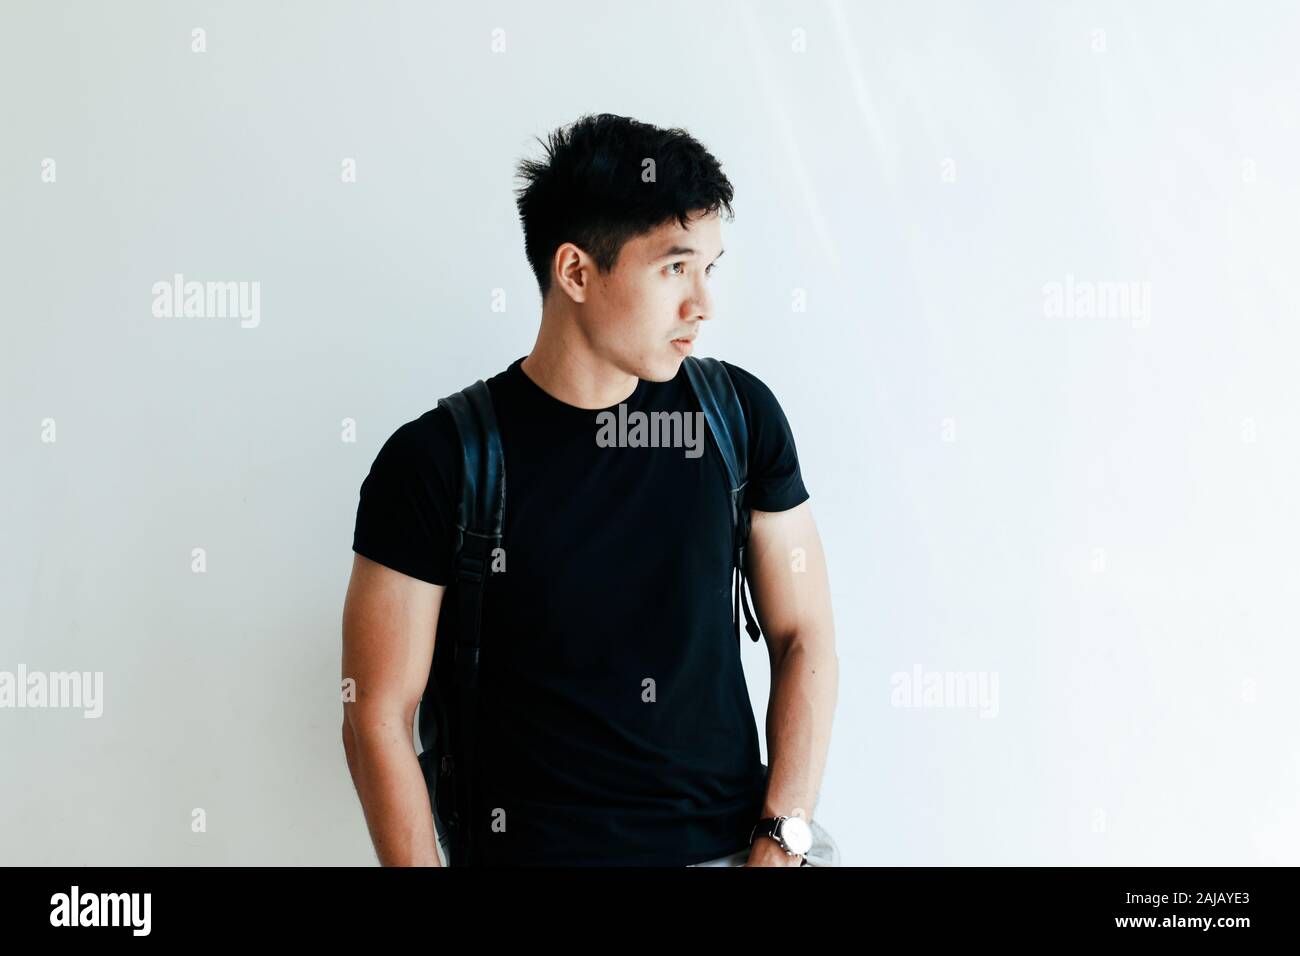 Giovane bello ragazzo asiatico vestita di nero plain shirt e zainetto al giorno in Sai Gon city, Vietnam - uno stile di vita informale di adolescente vietnamita Foto Stock